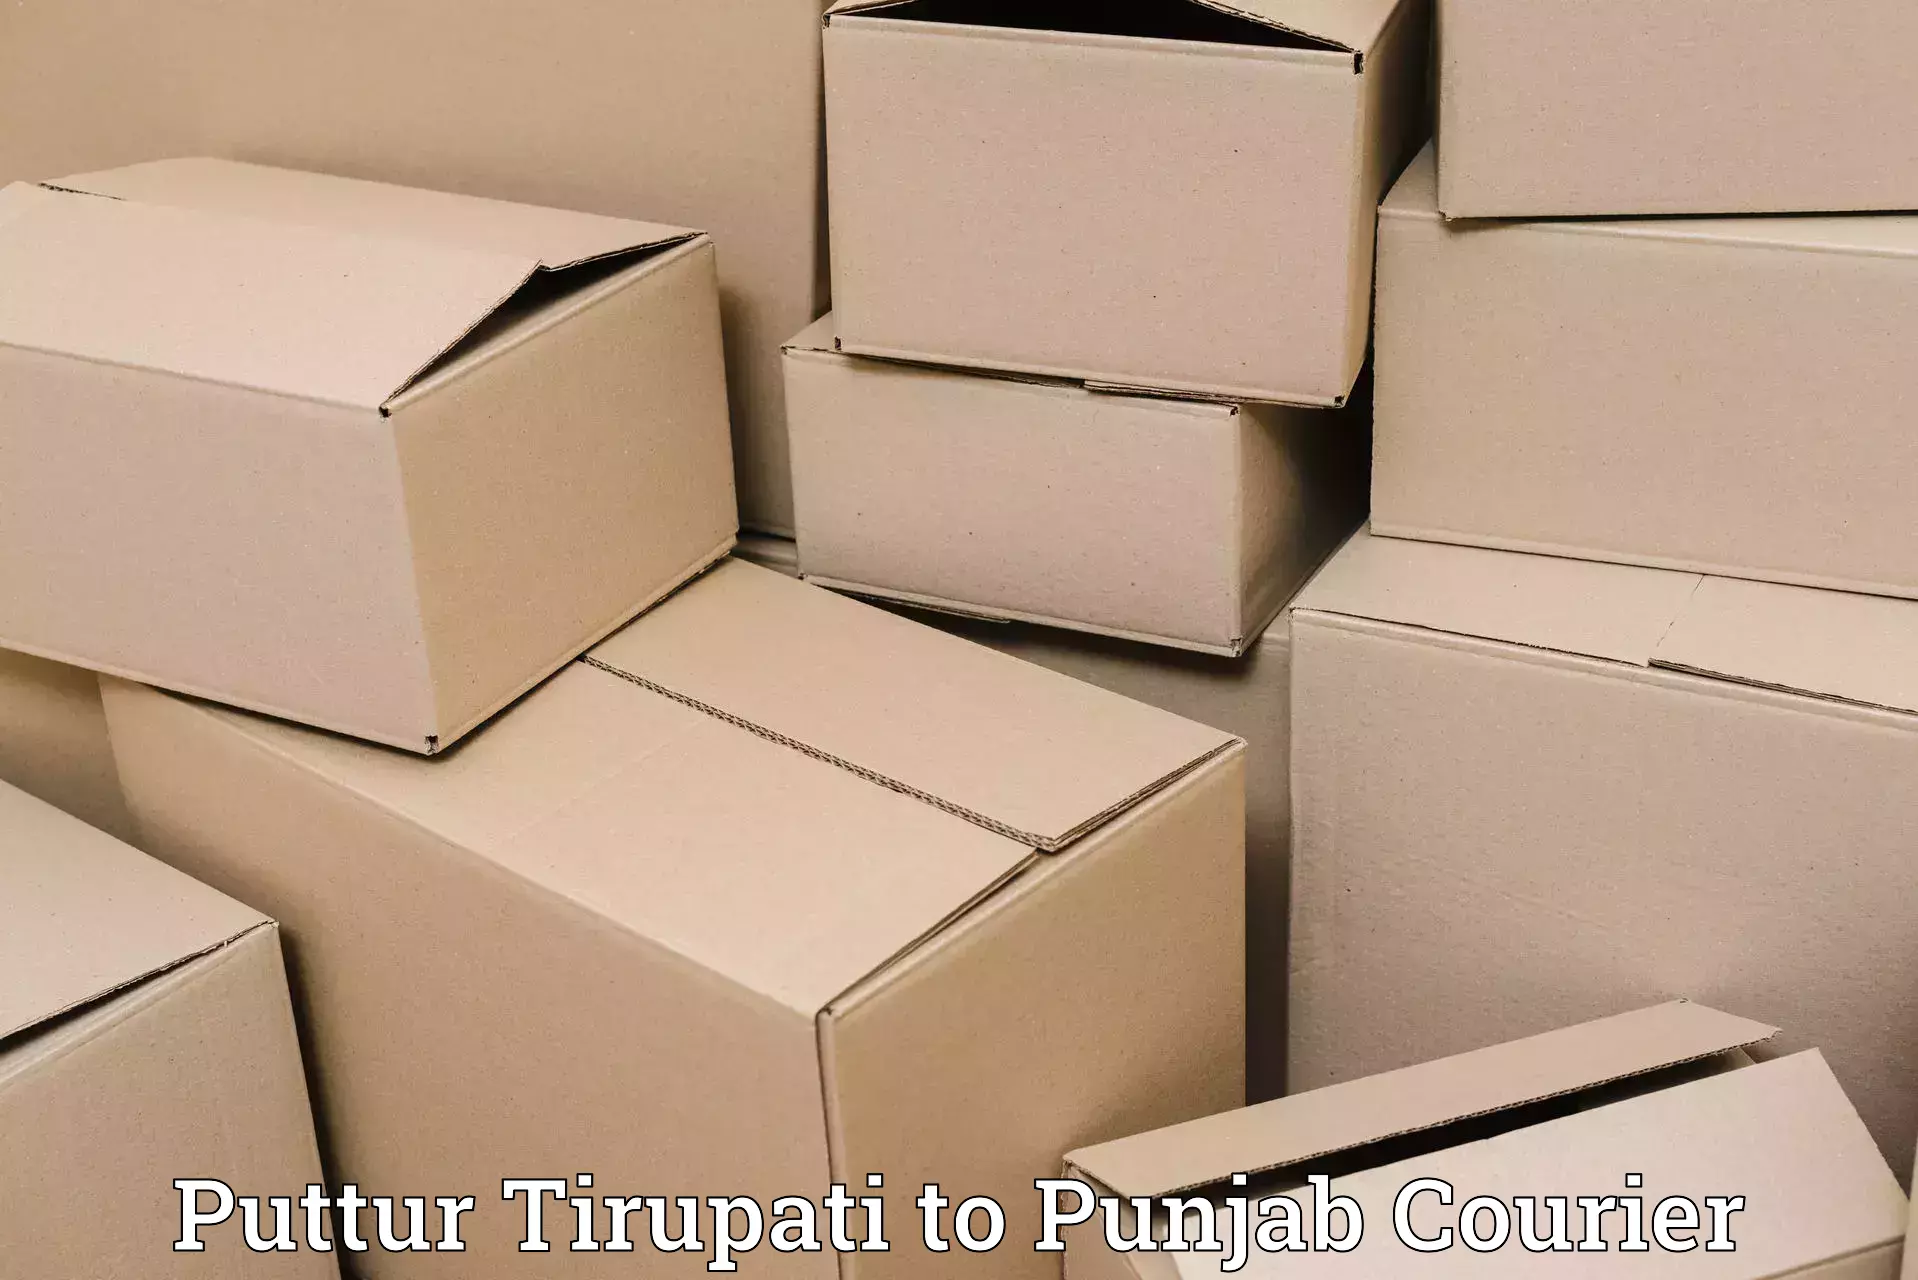 Luggage shipping service Puttur Tirupati to Punjab